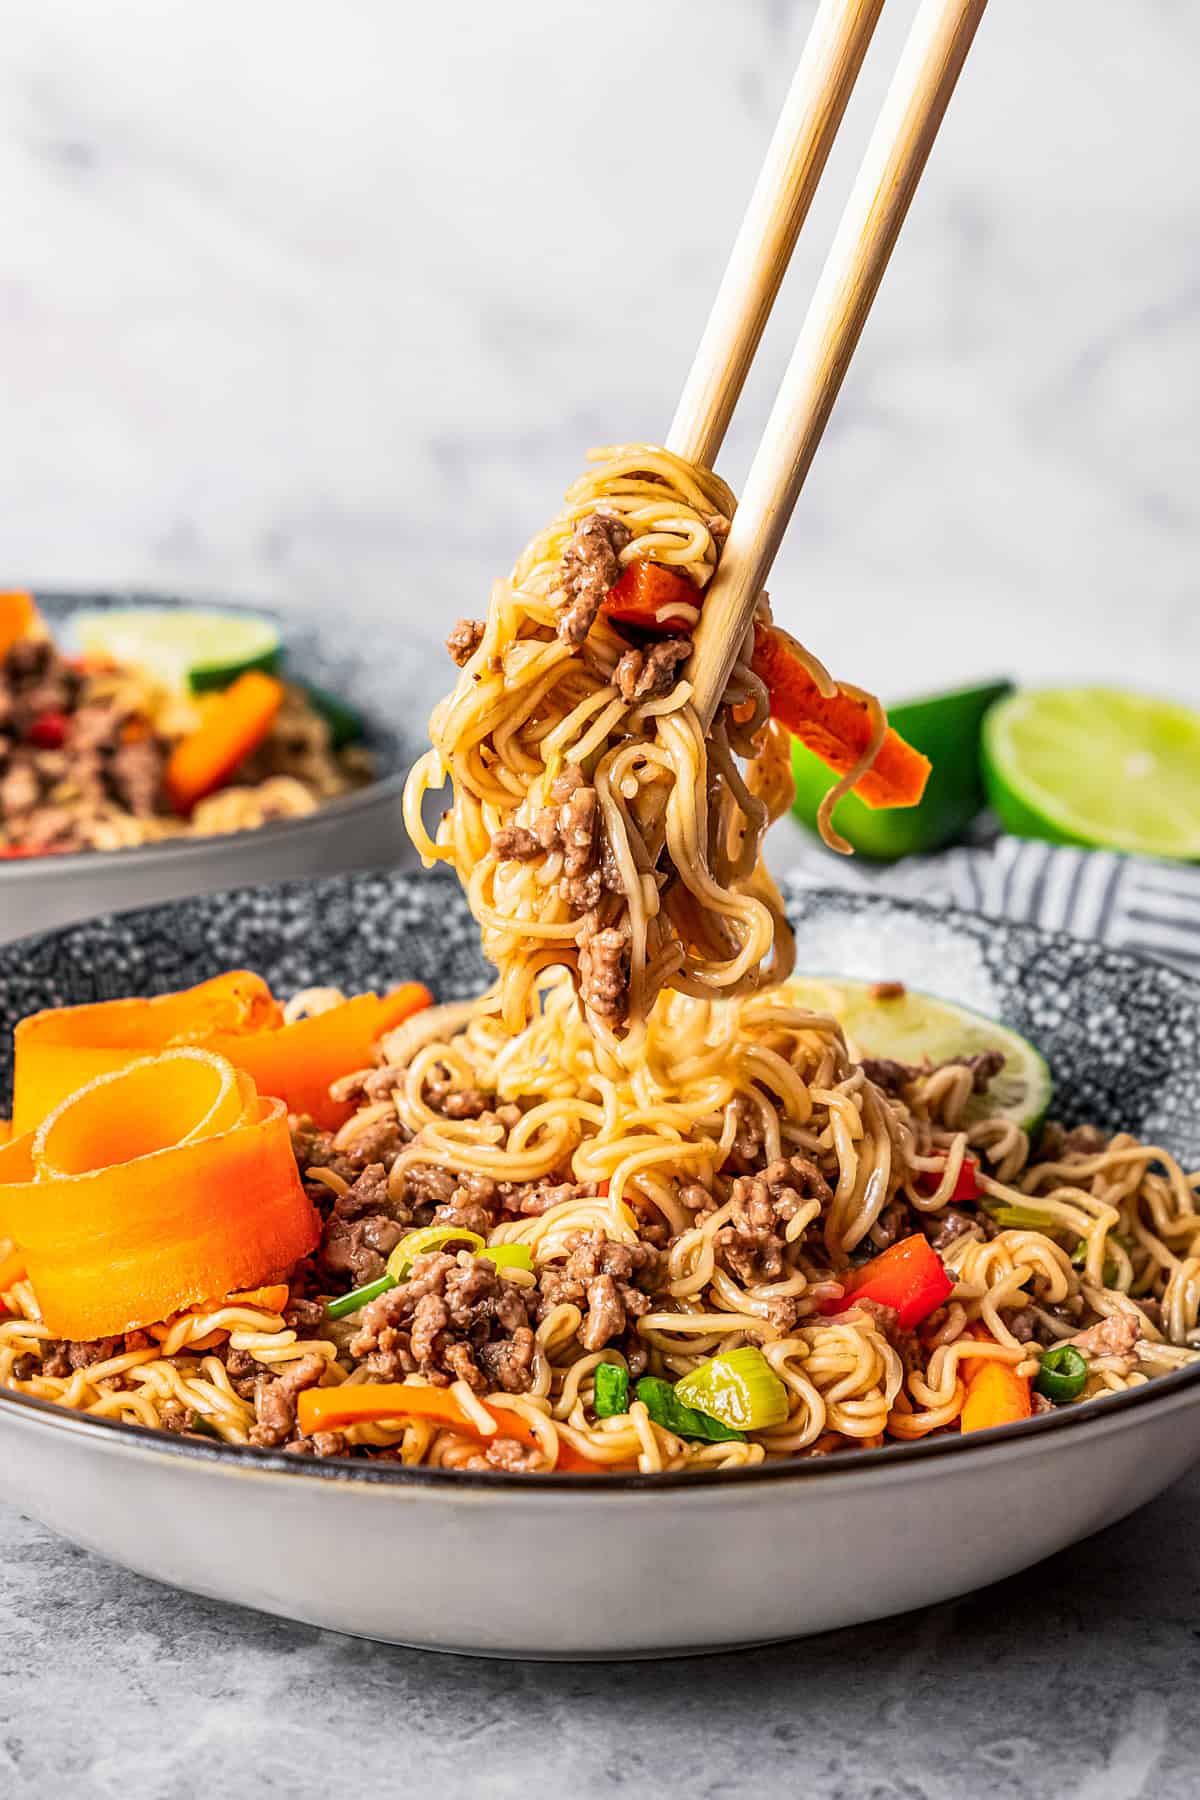 Chopsticks lifting beef ramen noodles from a bowl.